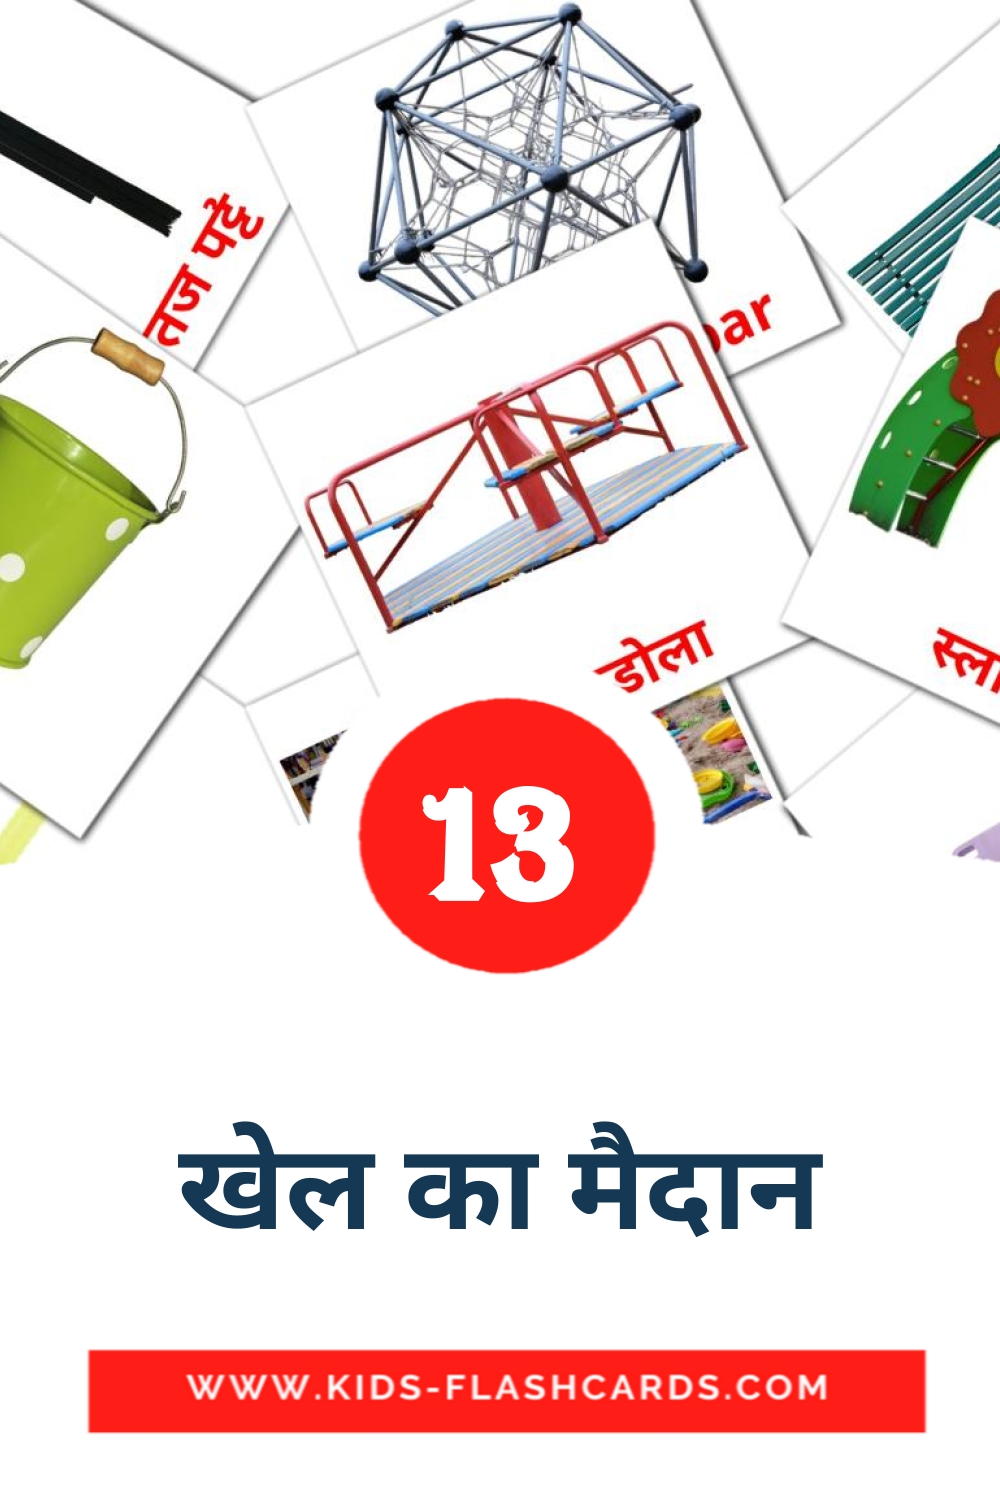 13 carte illustrate di खेल का मैदान per la scuola materna in hindi